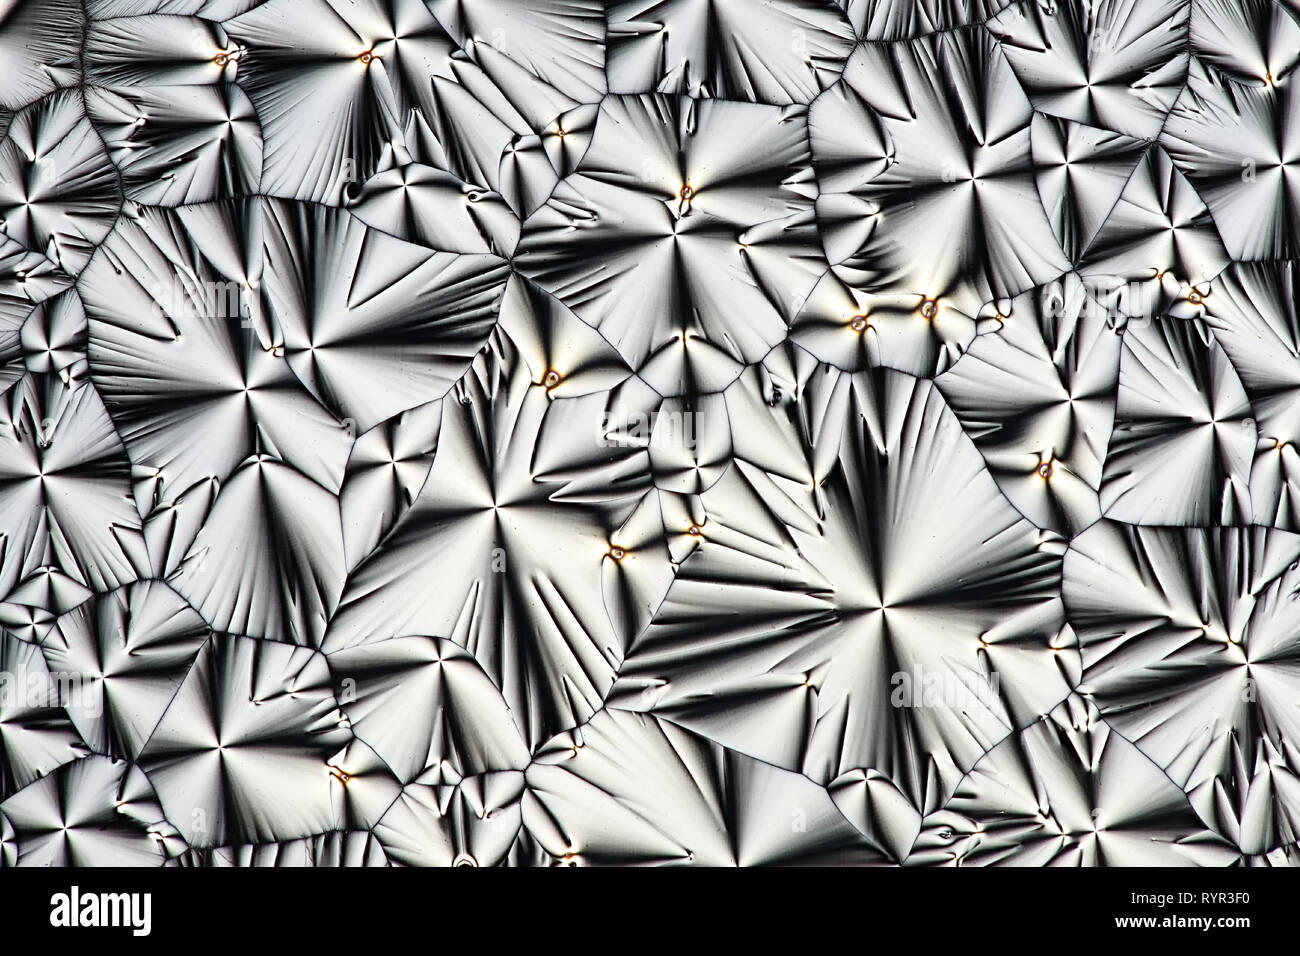 Wissenschaft und Kunst Dies ist Ascorbinsäure, bekannt als Vitamin C, in kristallisierter Form fotografiert bekannt. Stockfoto